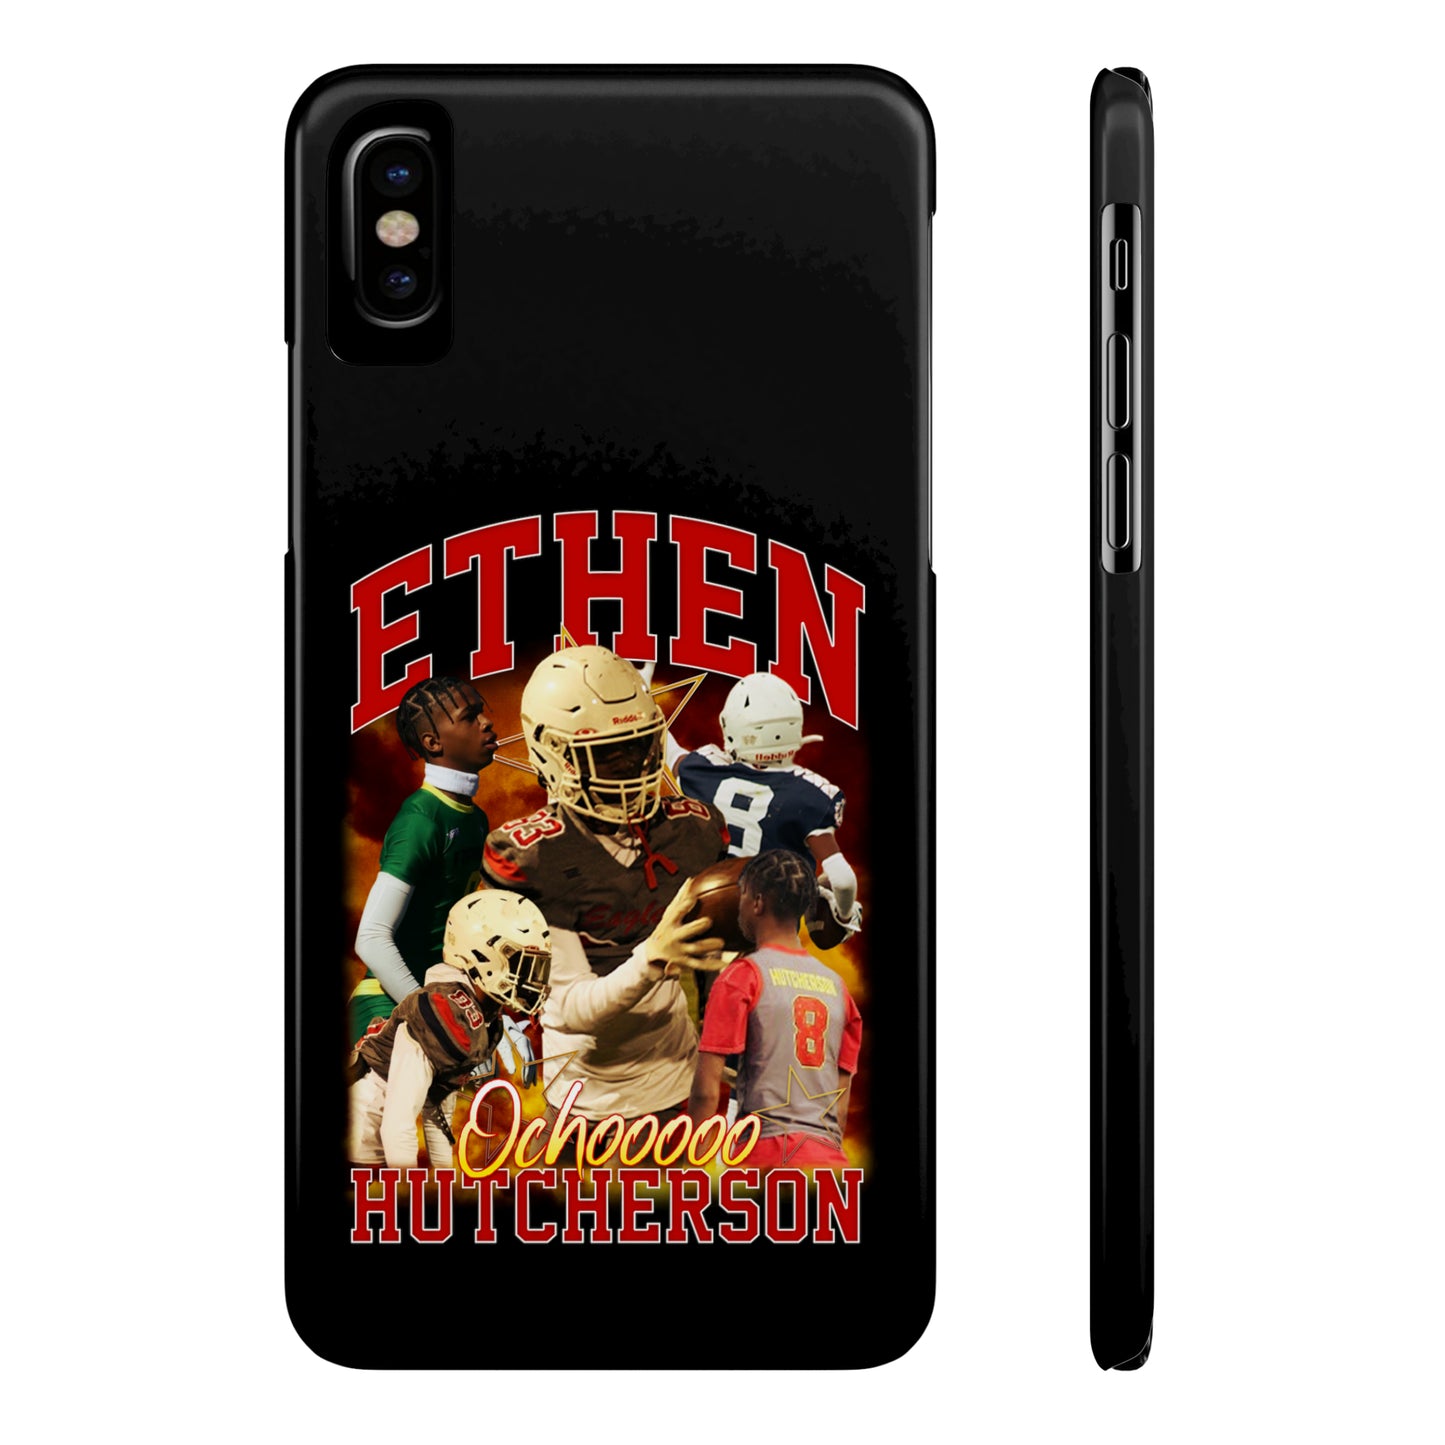 Ethen Hutcherson Phone Case